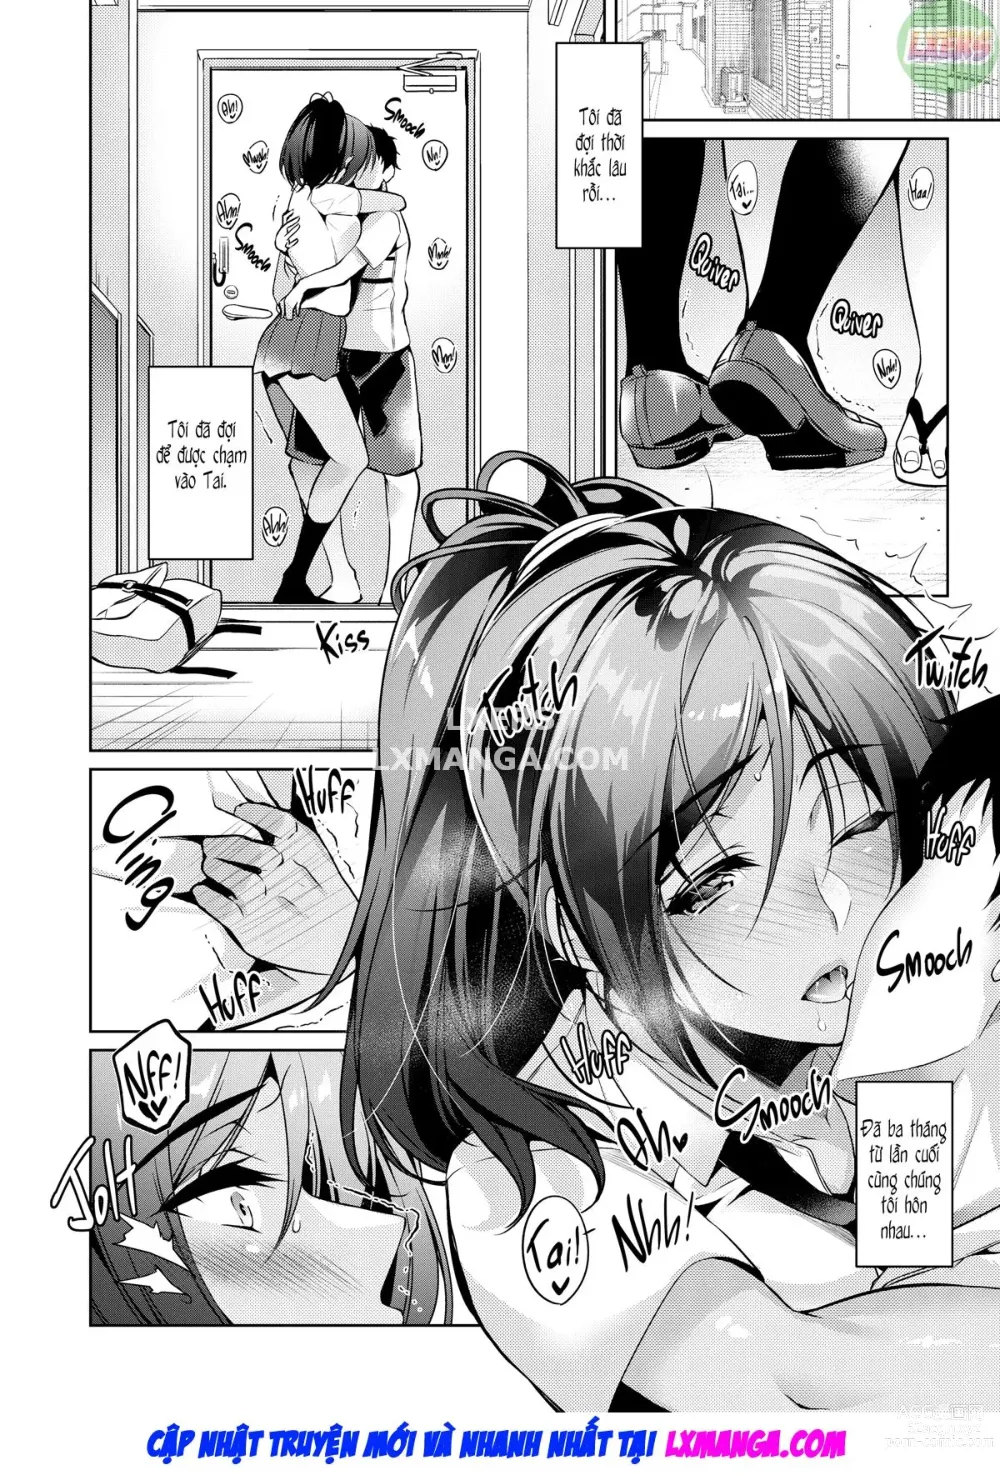 Page 12 of doujinshi Mình tan chảy khi người ấy nói mình đáng yêu